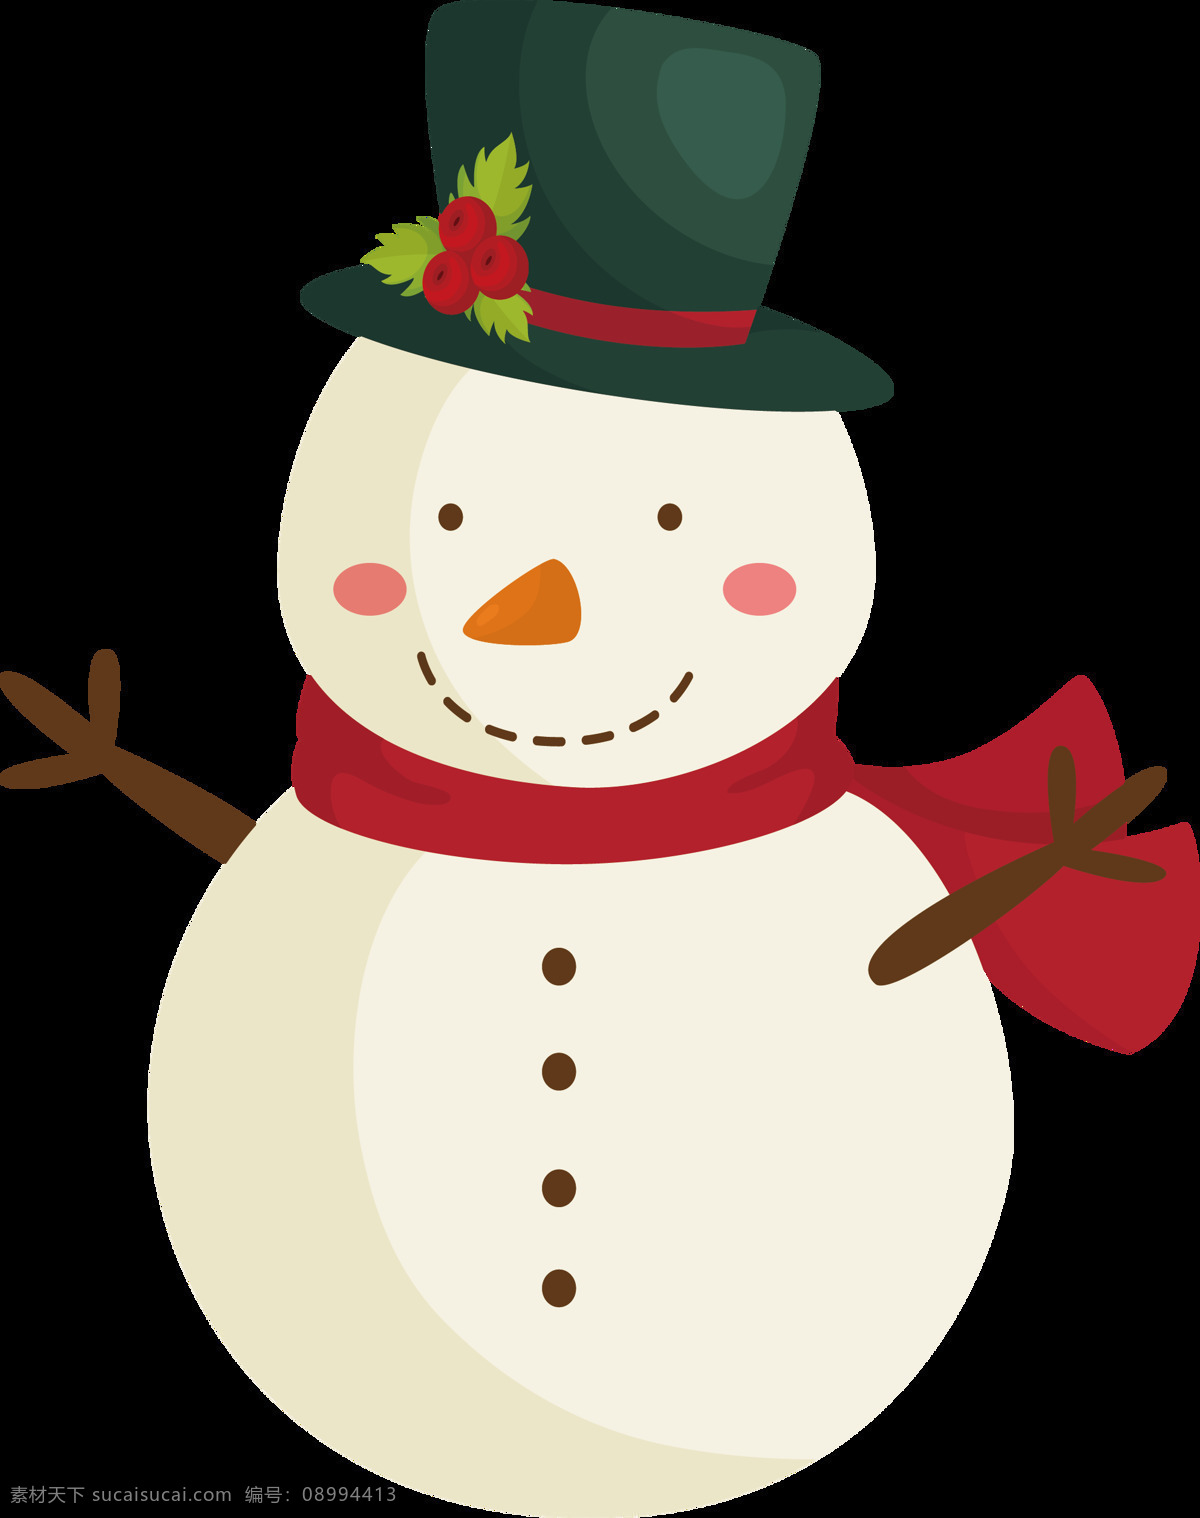 透明 圣诞 雪人 冬季元素 可爱雪人 圣诞png 圣诞节 圣诞免抠元素 圣诞素材 圣诞雪人 圣诞装扮 透明雪人 雪人png 雪人元素